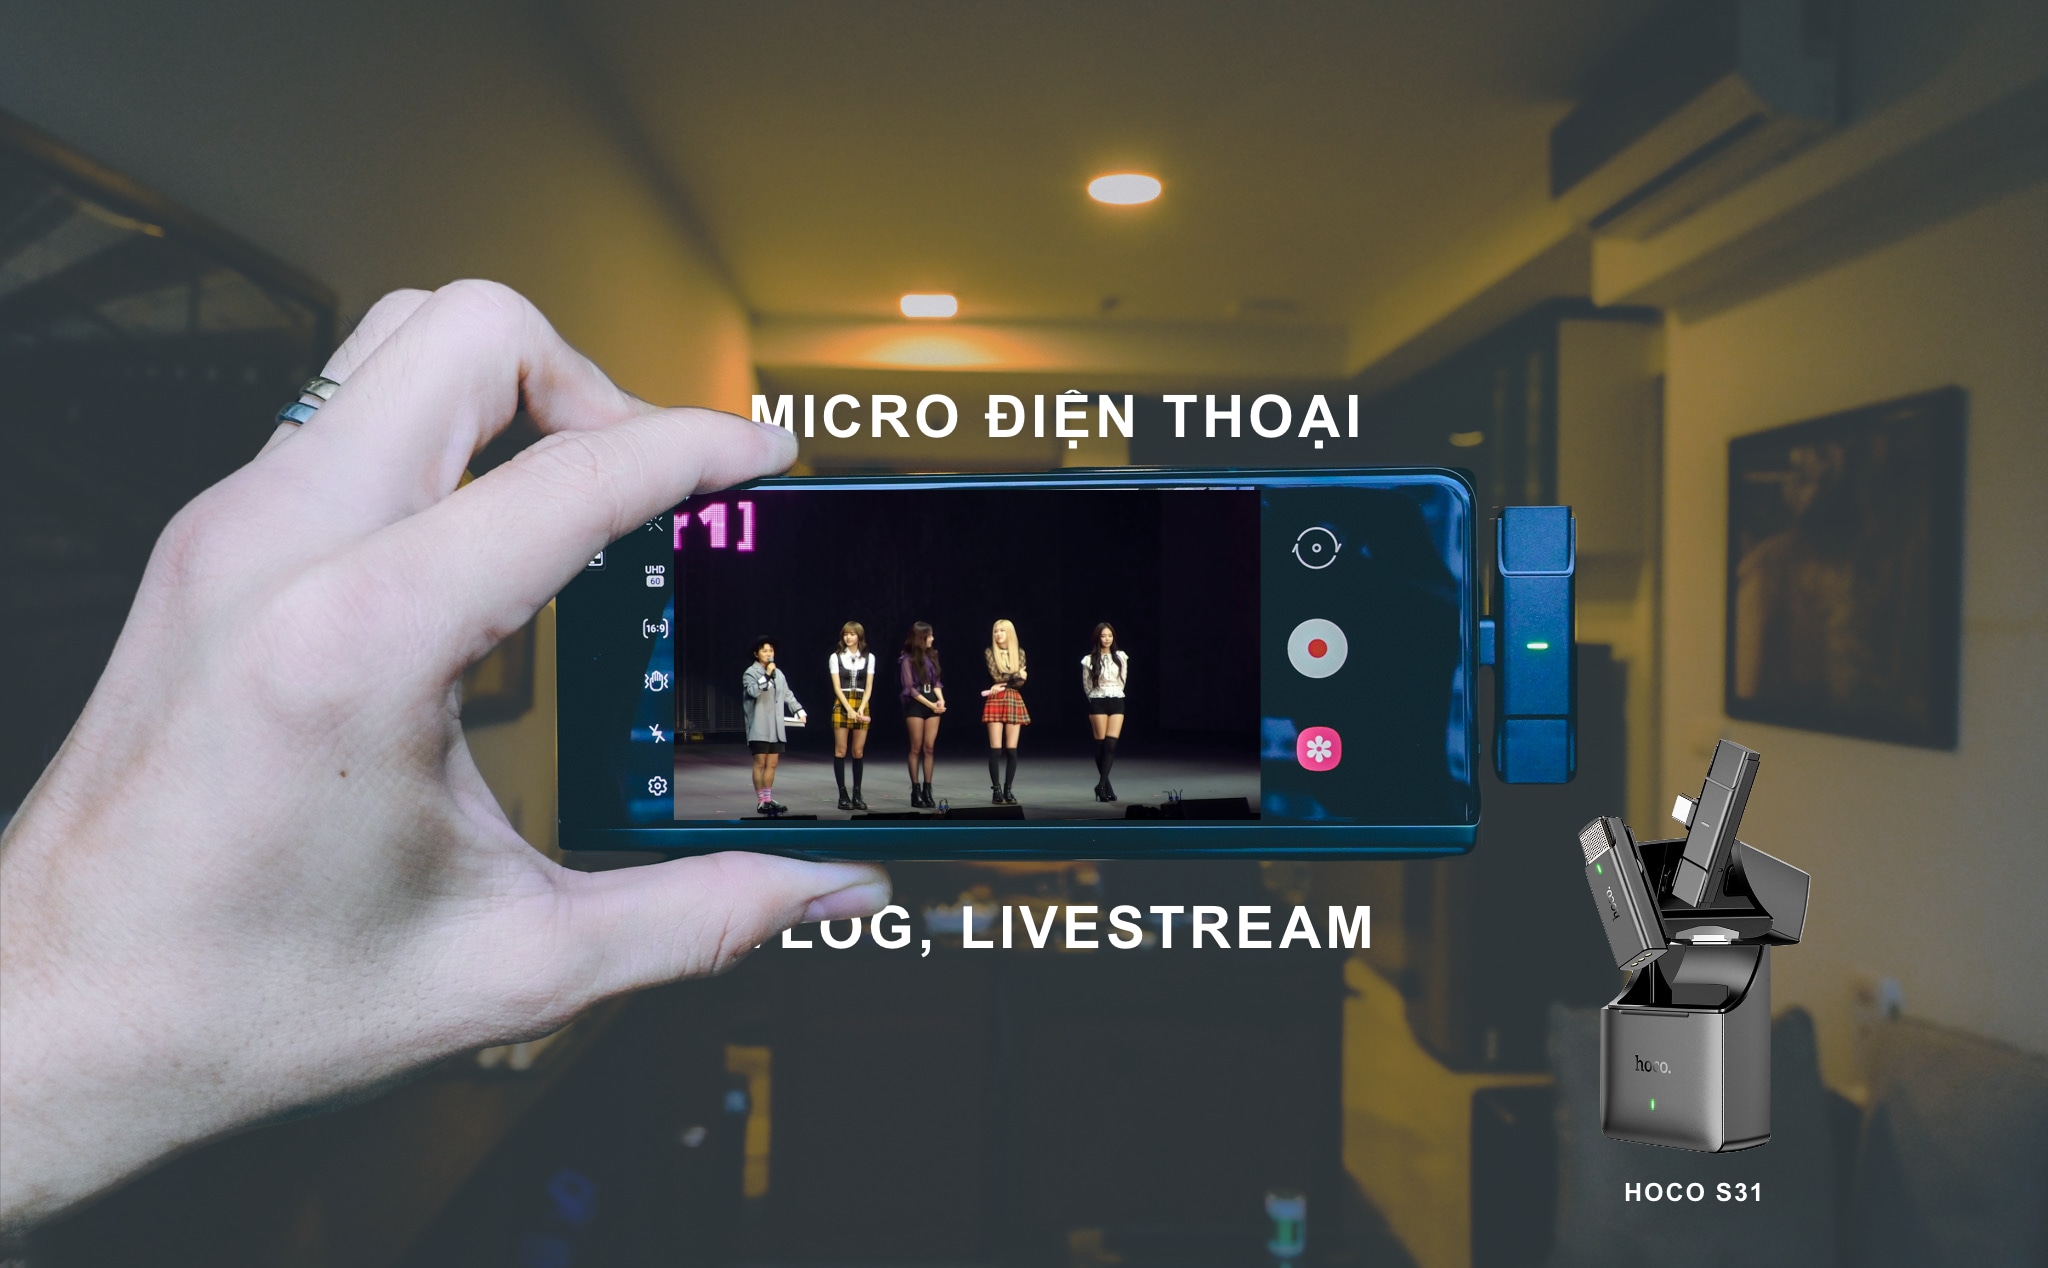 Trên tay micro điện thoại Hoco S31: âm tốt, quay phim, livestream Facebook với âm thanh tốt hơn